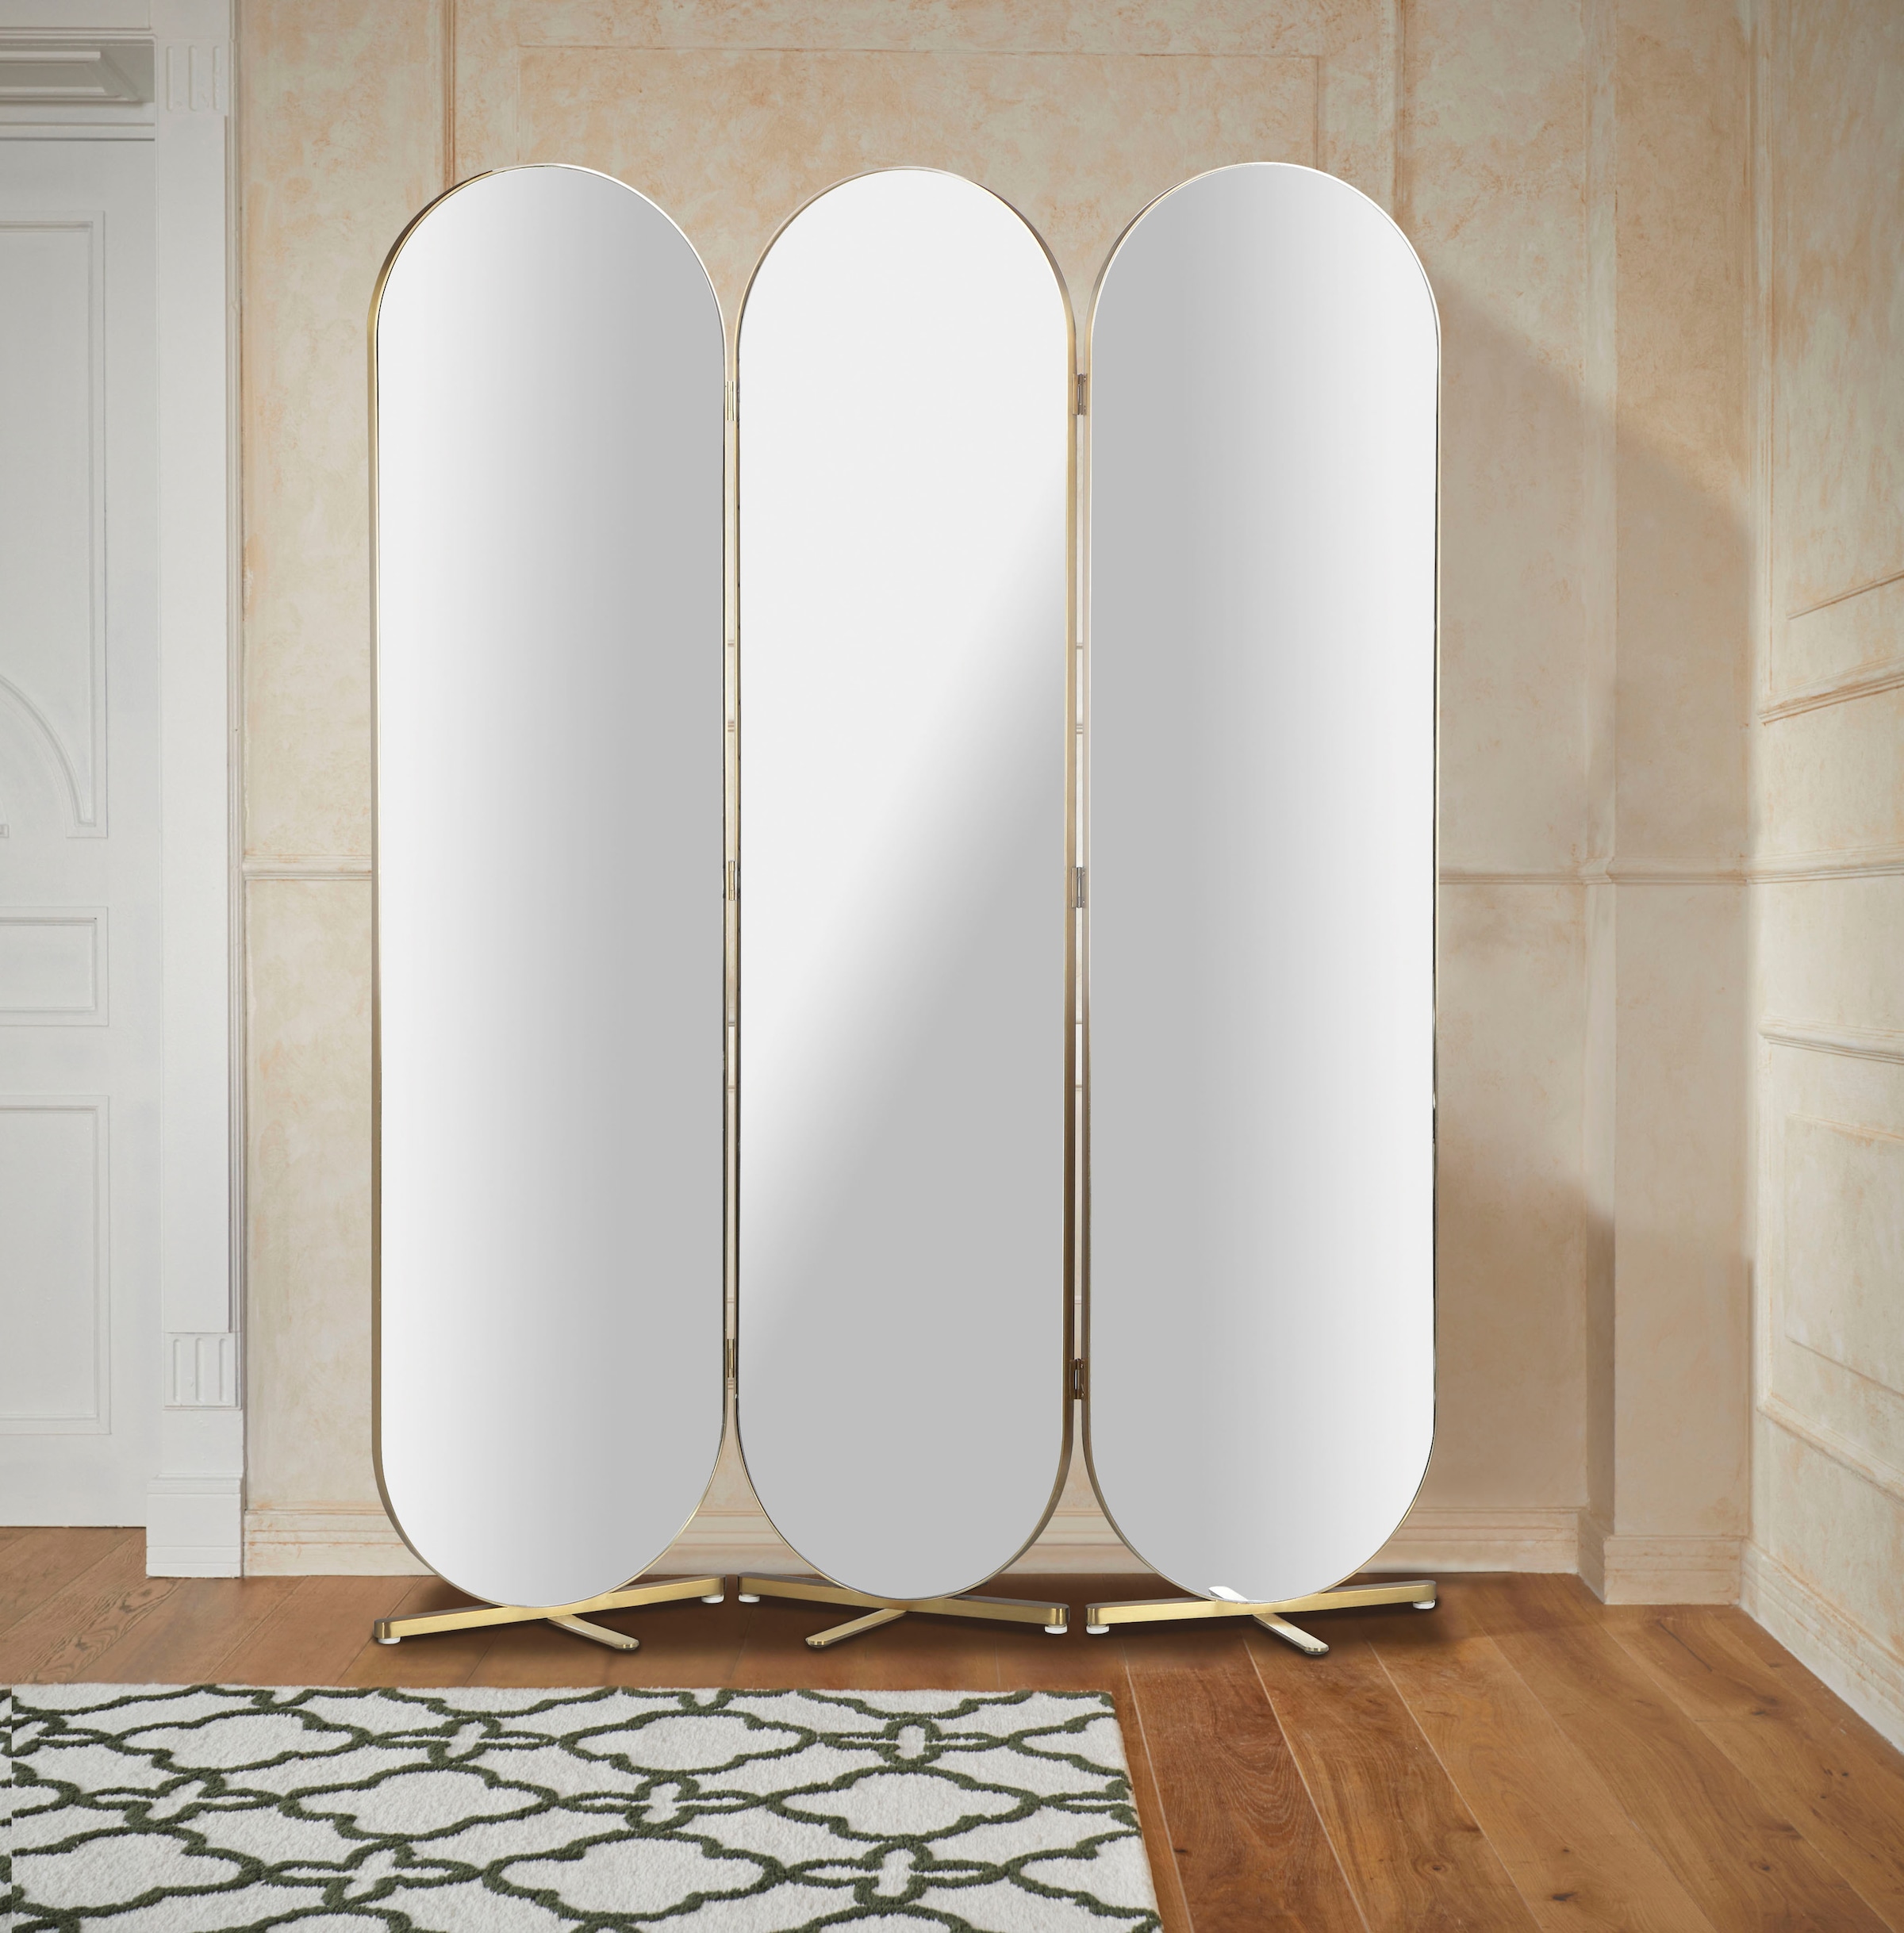 Raumteiler, ovale Spiegelflächen, Rückseite mit Samtvelours Bezug, Breite 138,5 cm